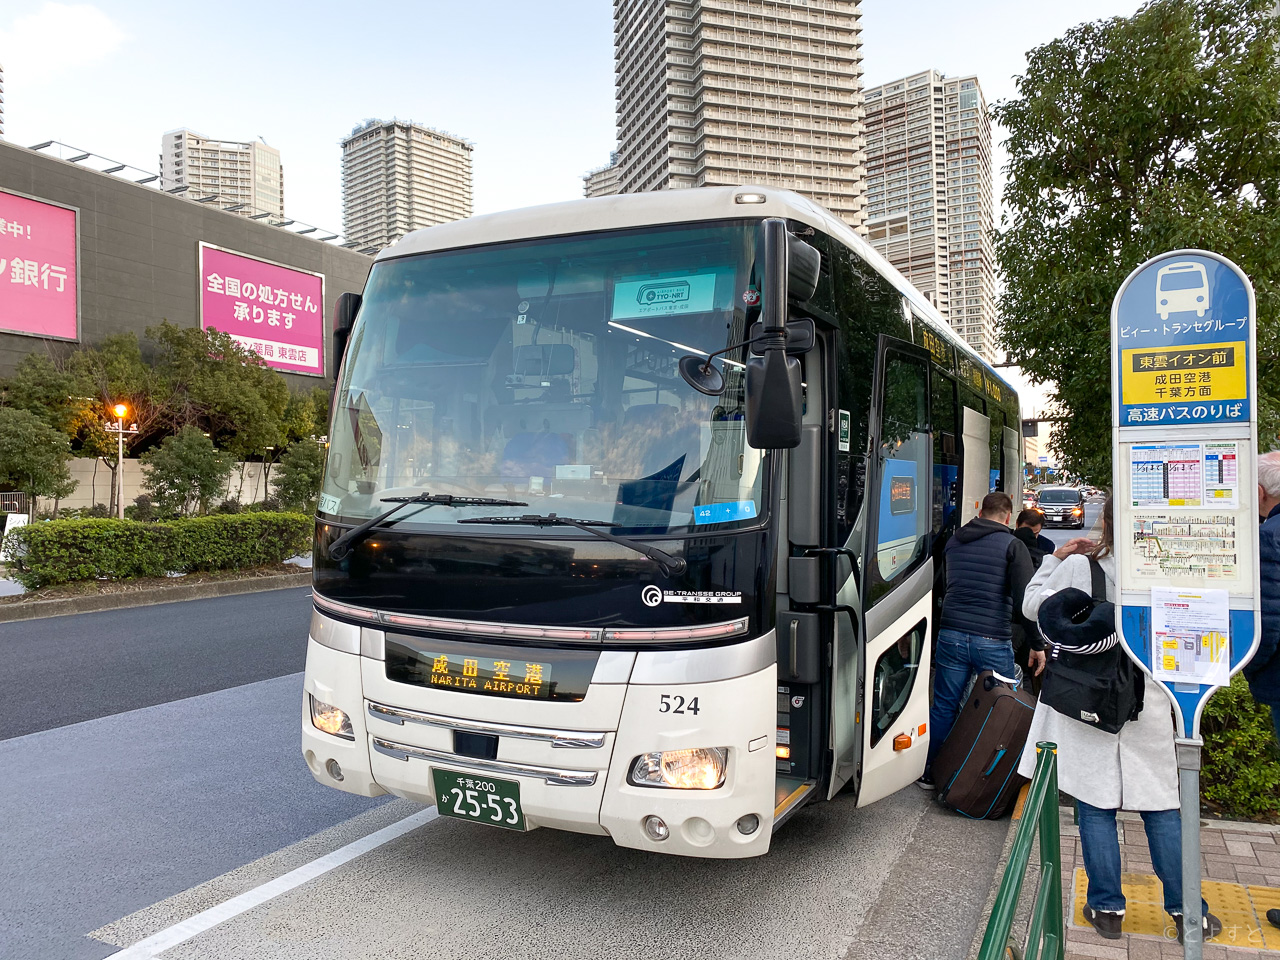 東雲 成田の高速バス エアポートバス東京 成田 が運賃を値上げへ とよすと